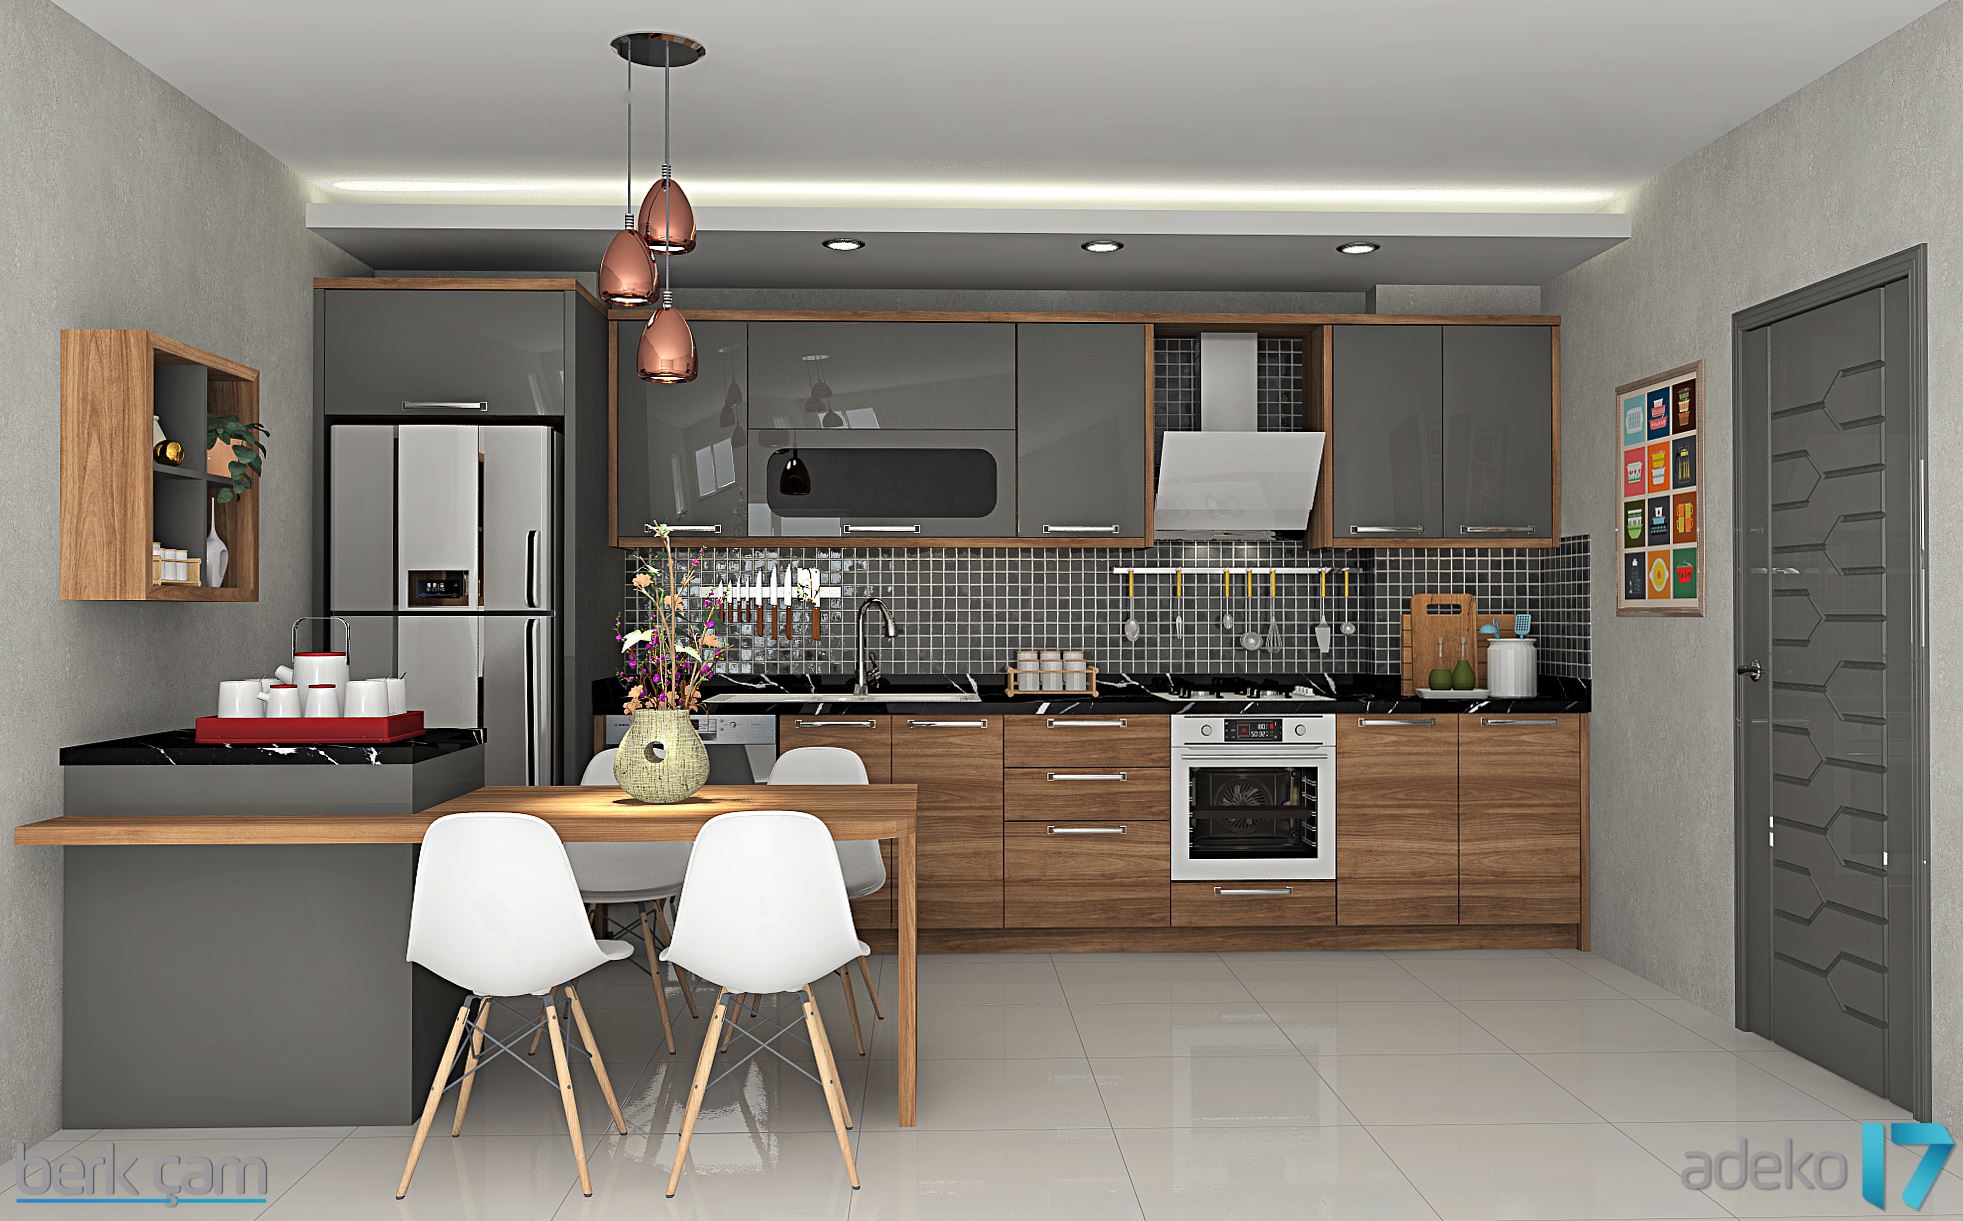 download adeko kitchen design 6.3